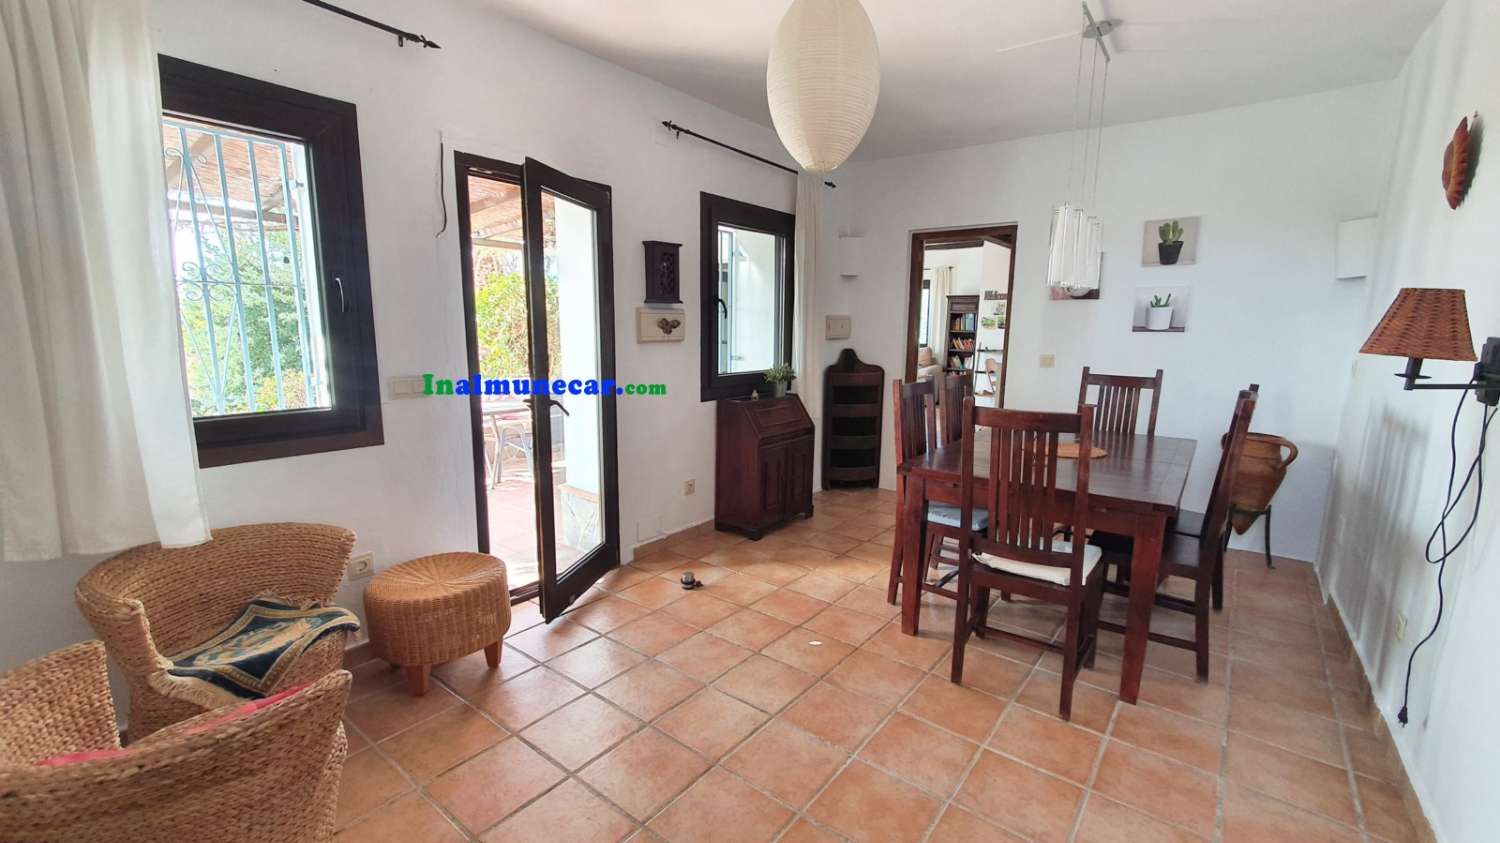 Country villa for sale located in the Bay of La Herradura, Andalusia.